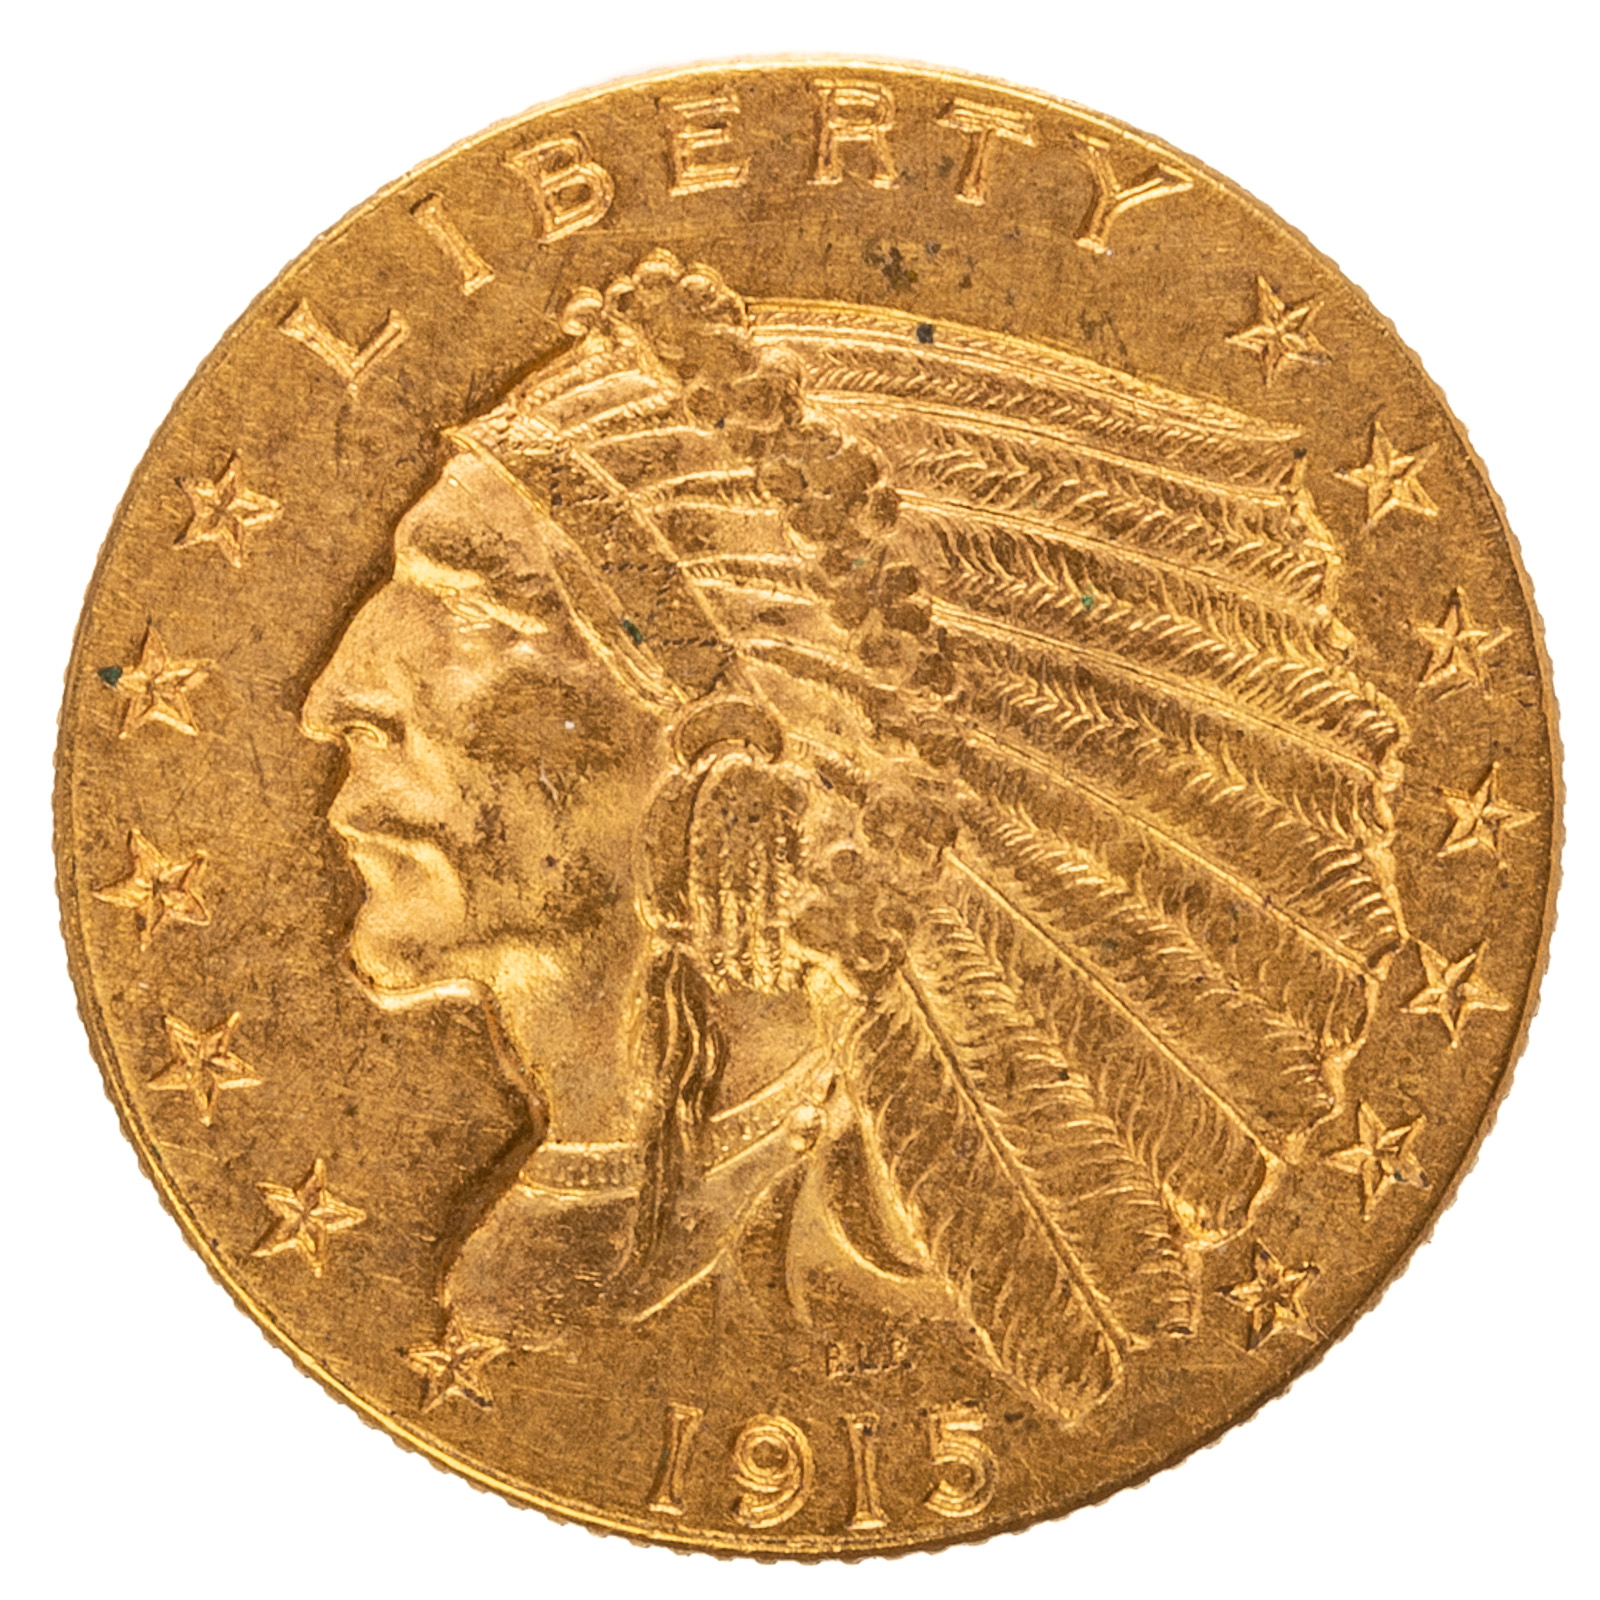 1915 $2.50 INDIAN QUARTER EAGLE